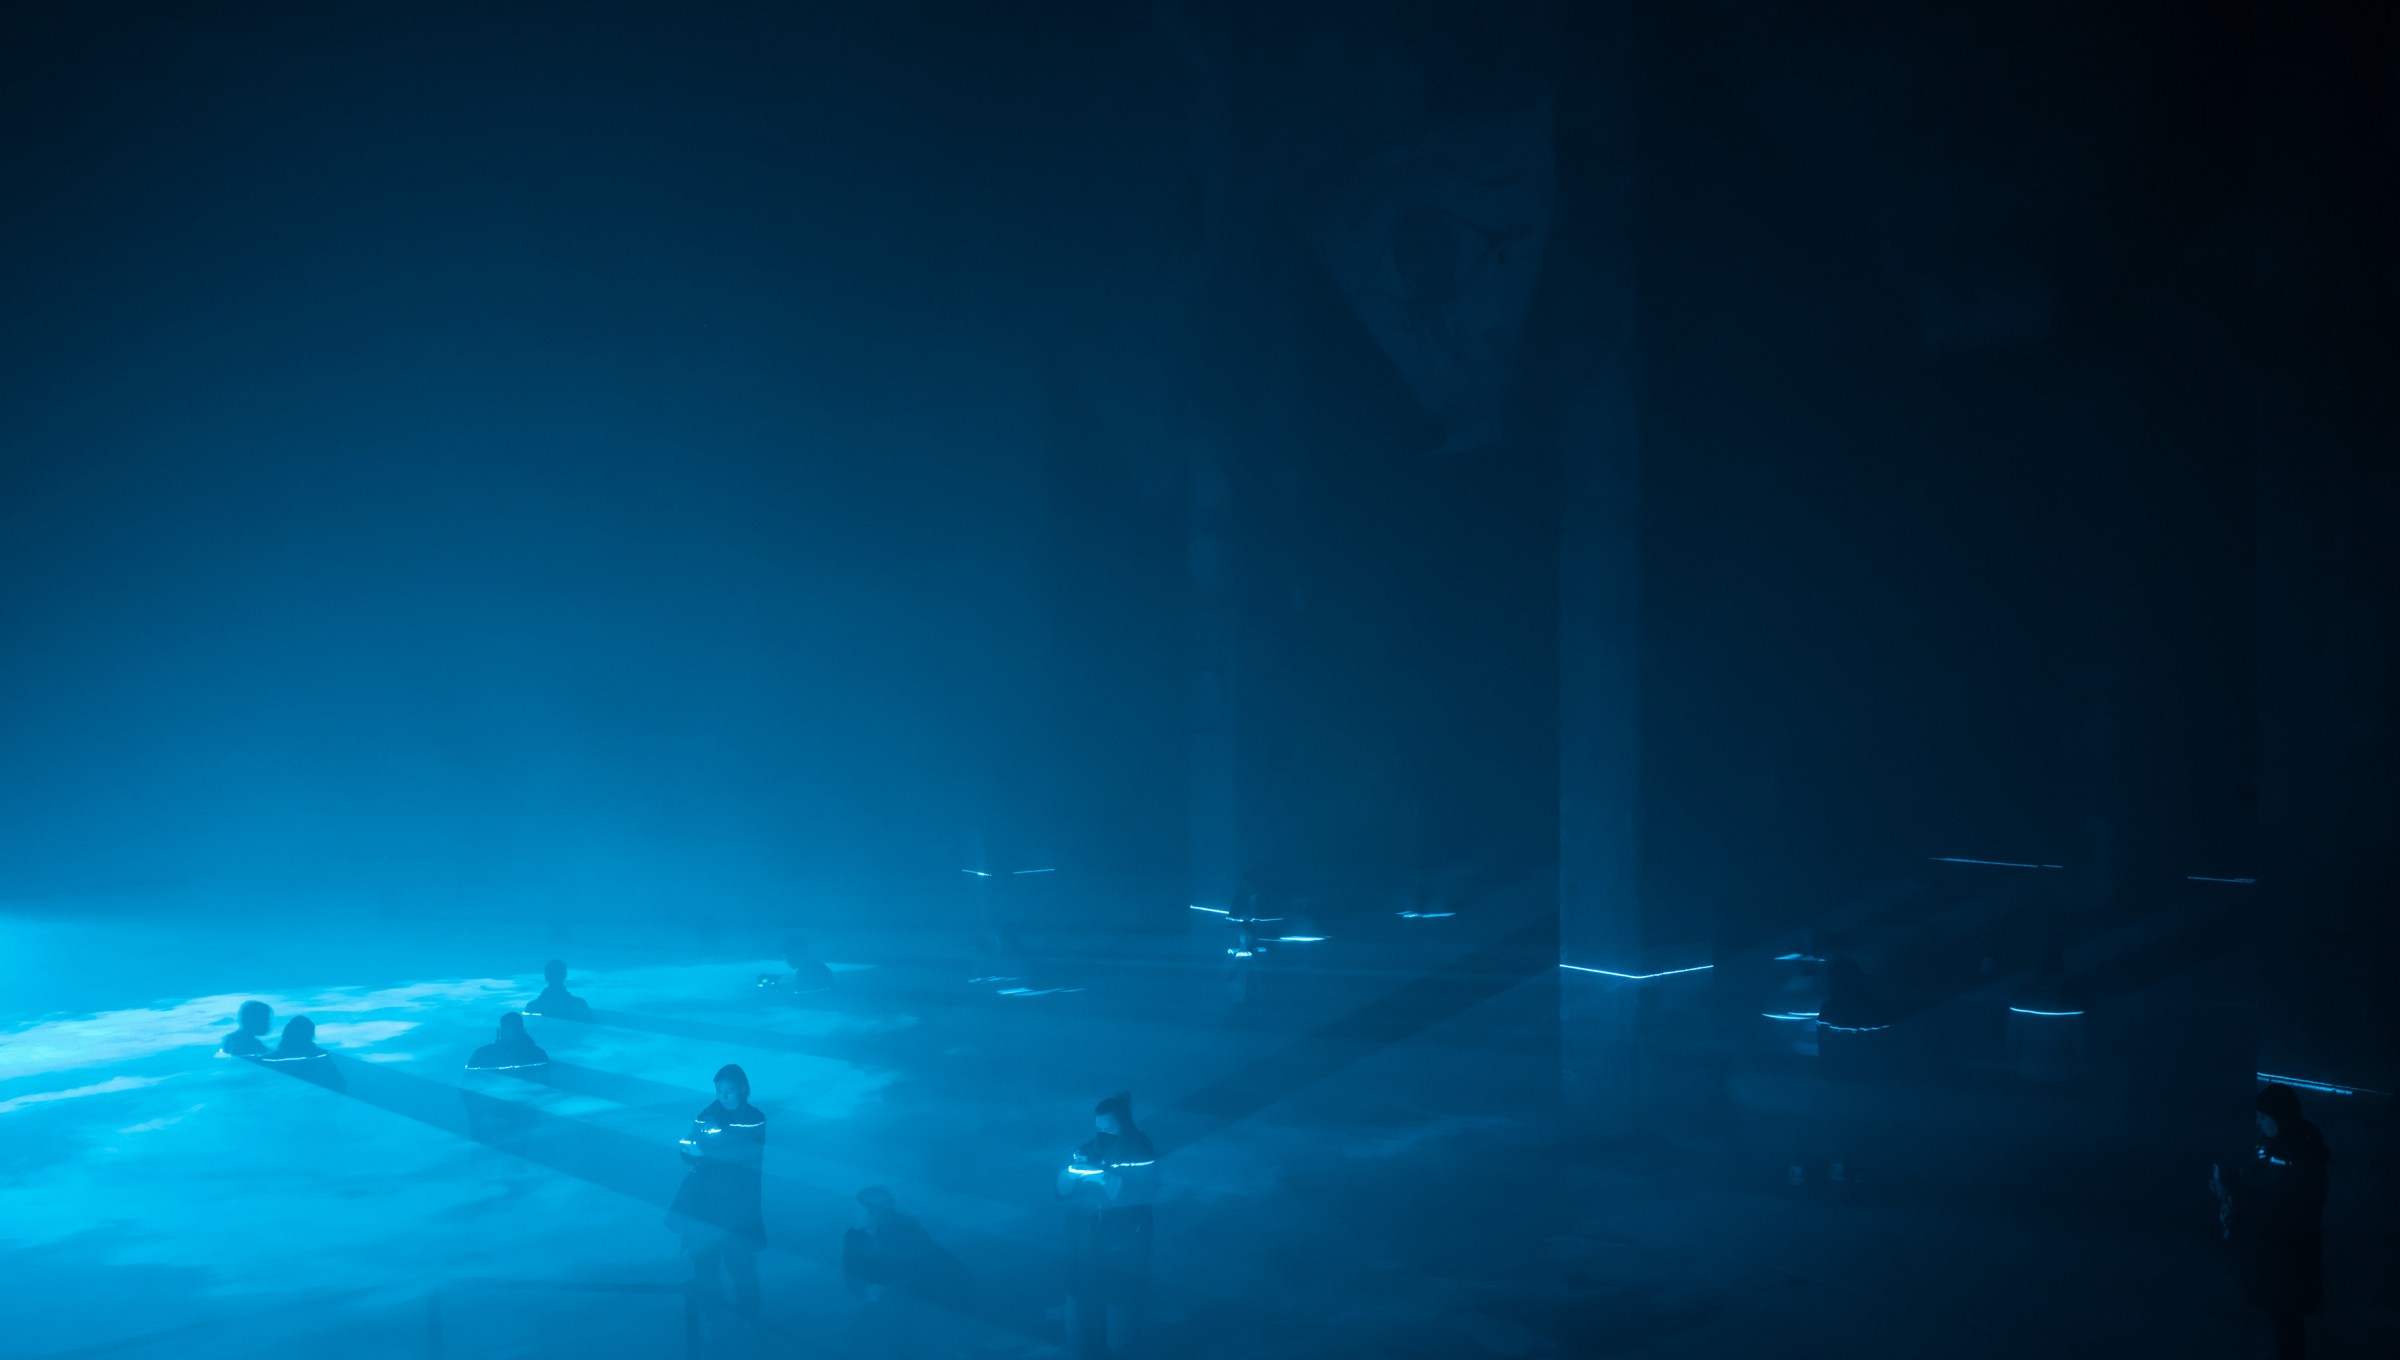 thegreeneyl ausstellungsdesign las foundation ian cheng halle am berghain pool licht installation blau